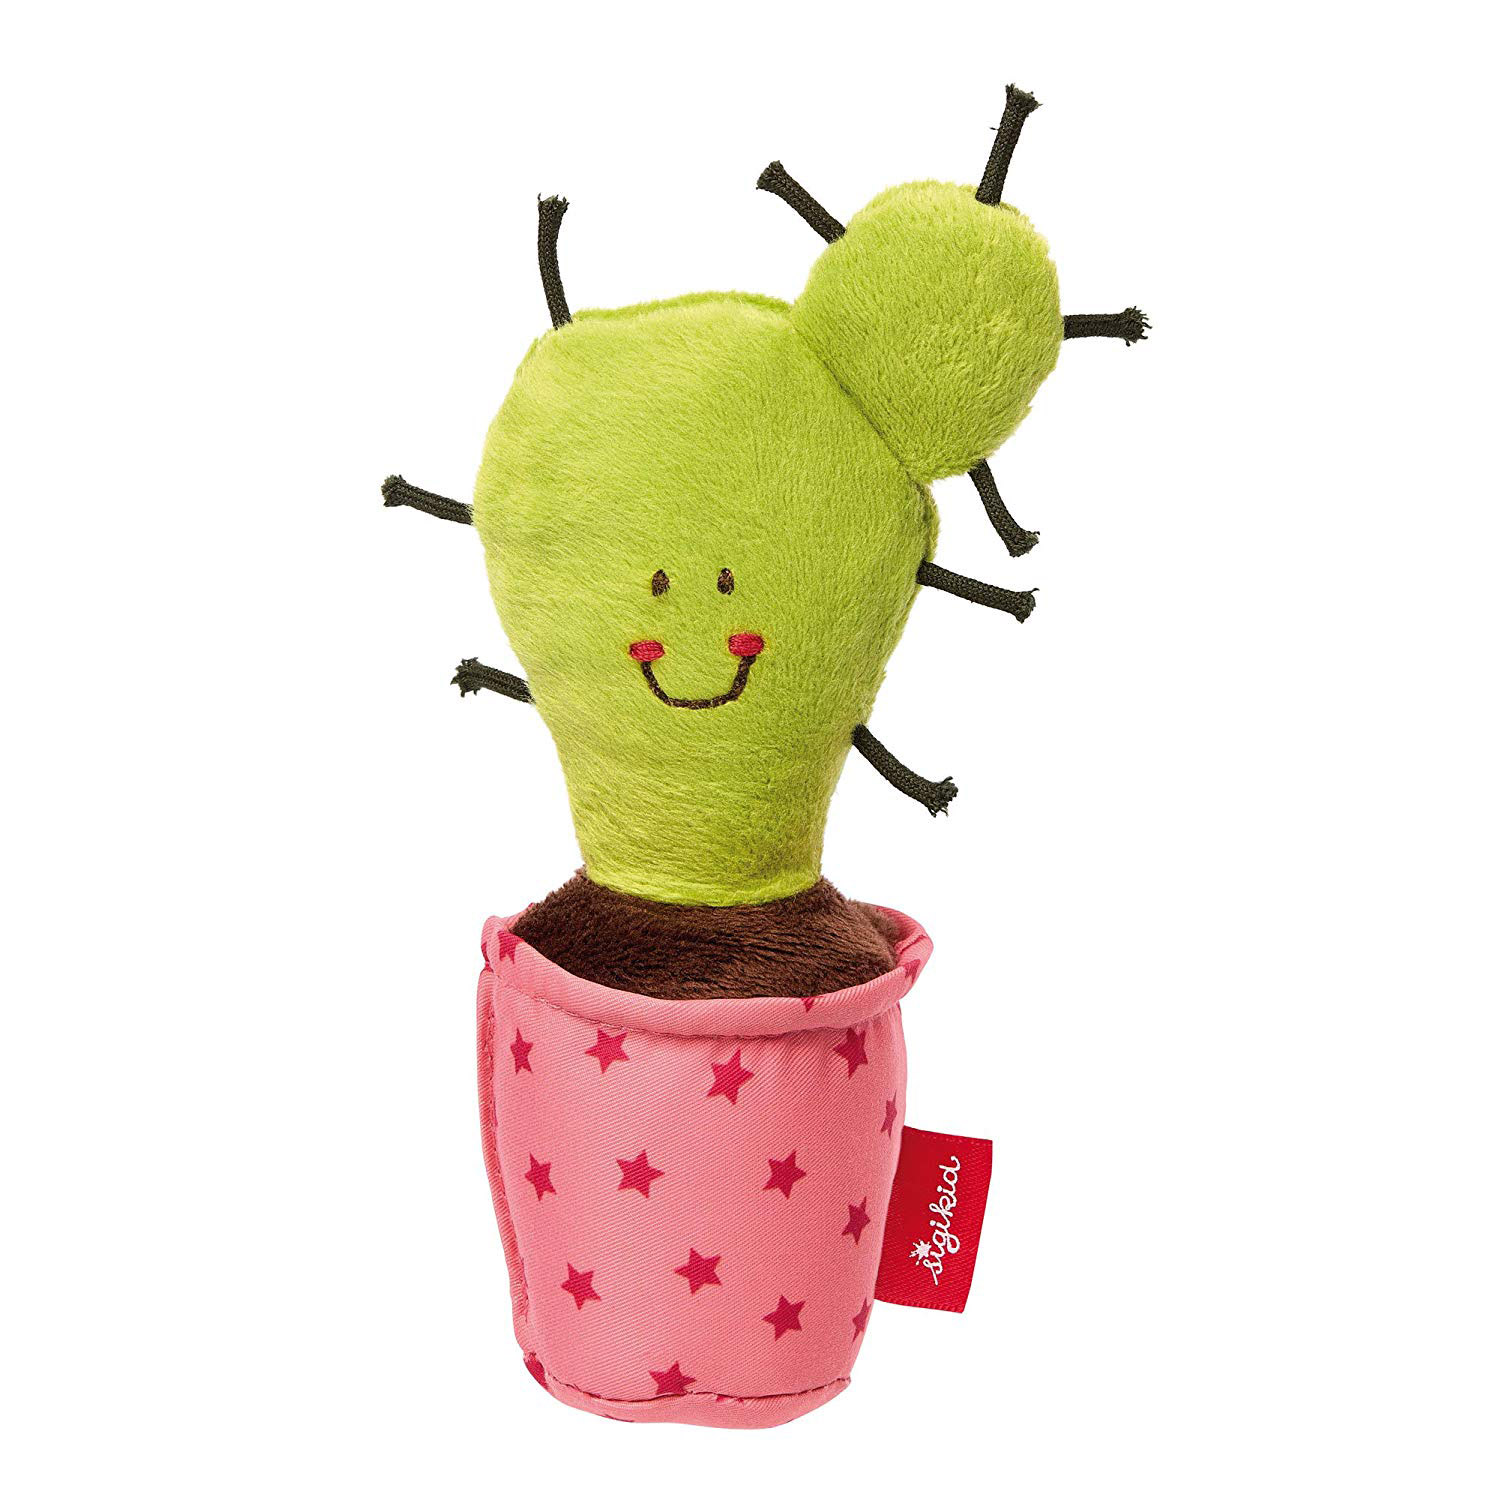 Peluche de cactus Frutivegie hecho a mano